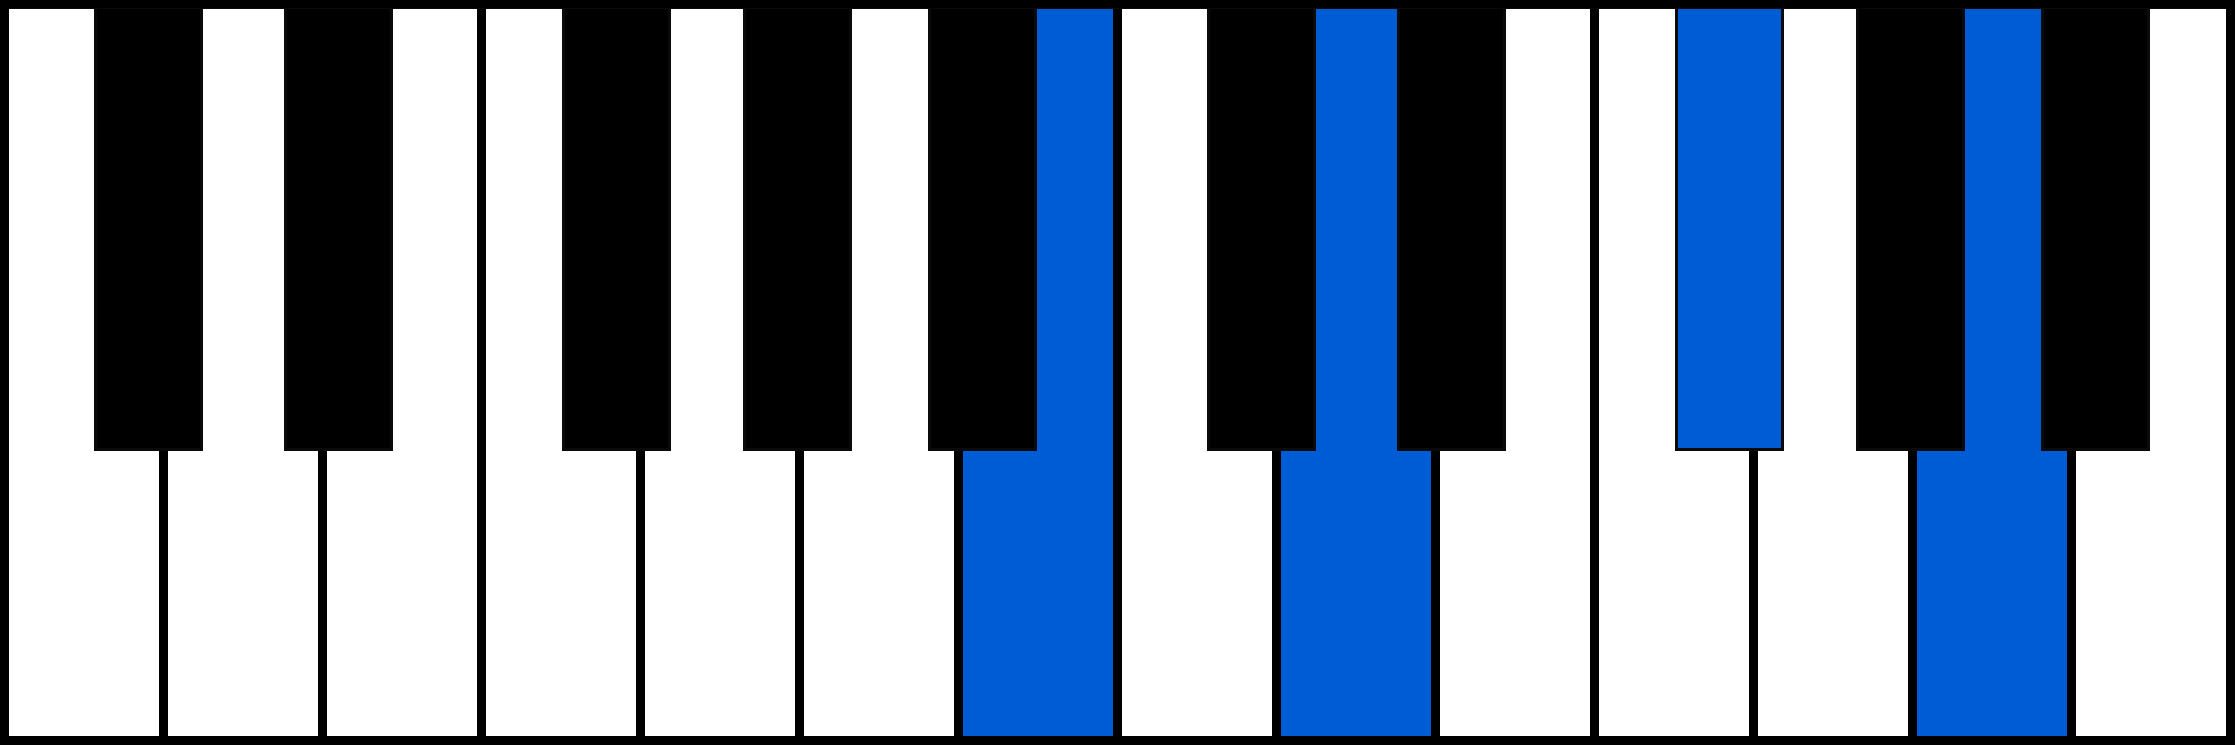 Bm7 piano chord